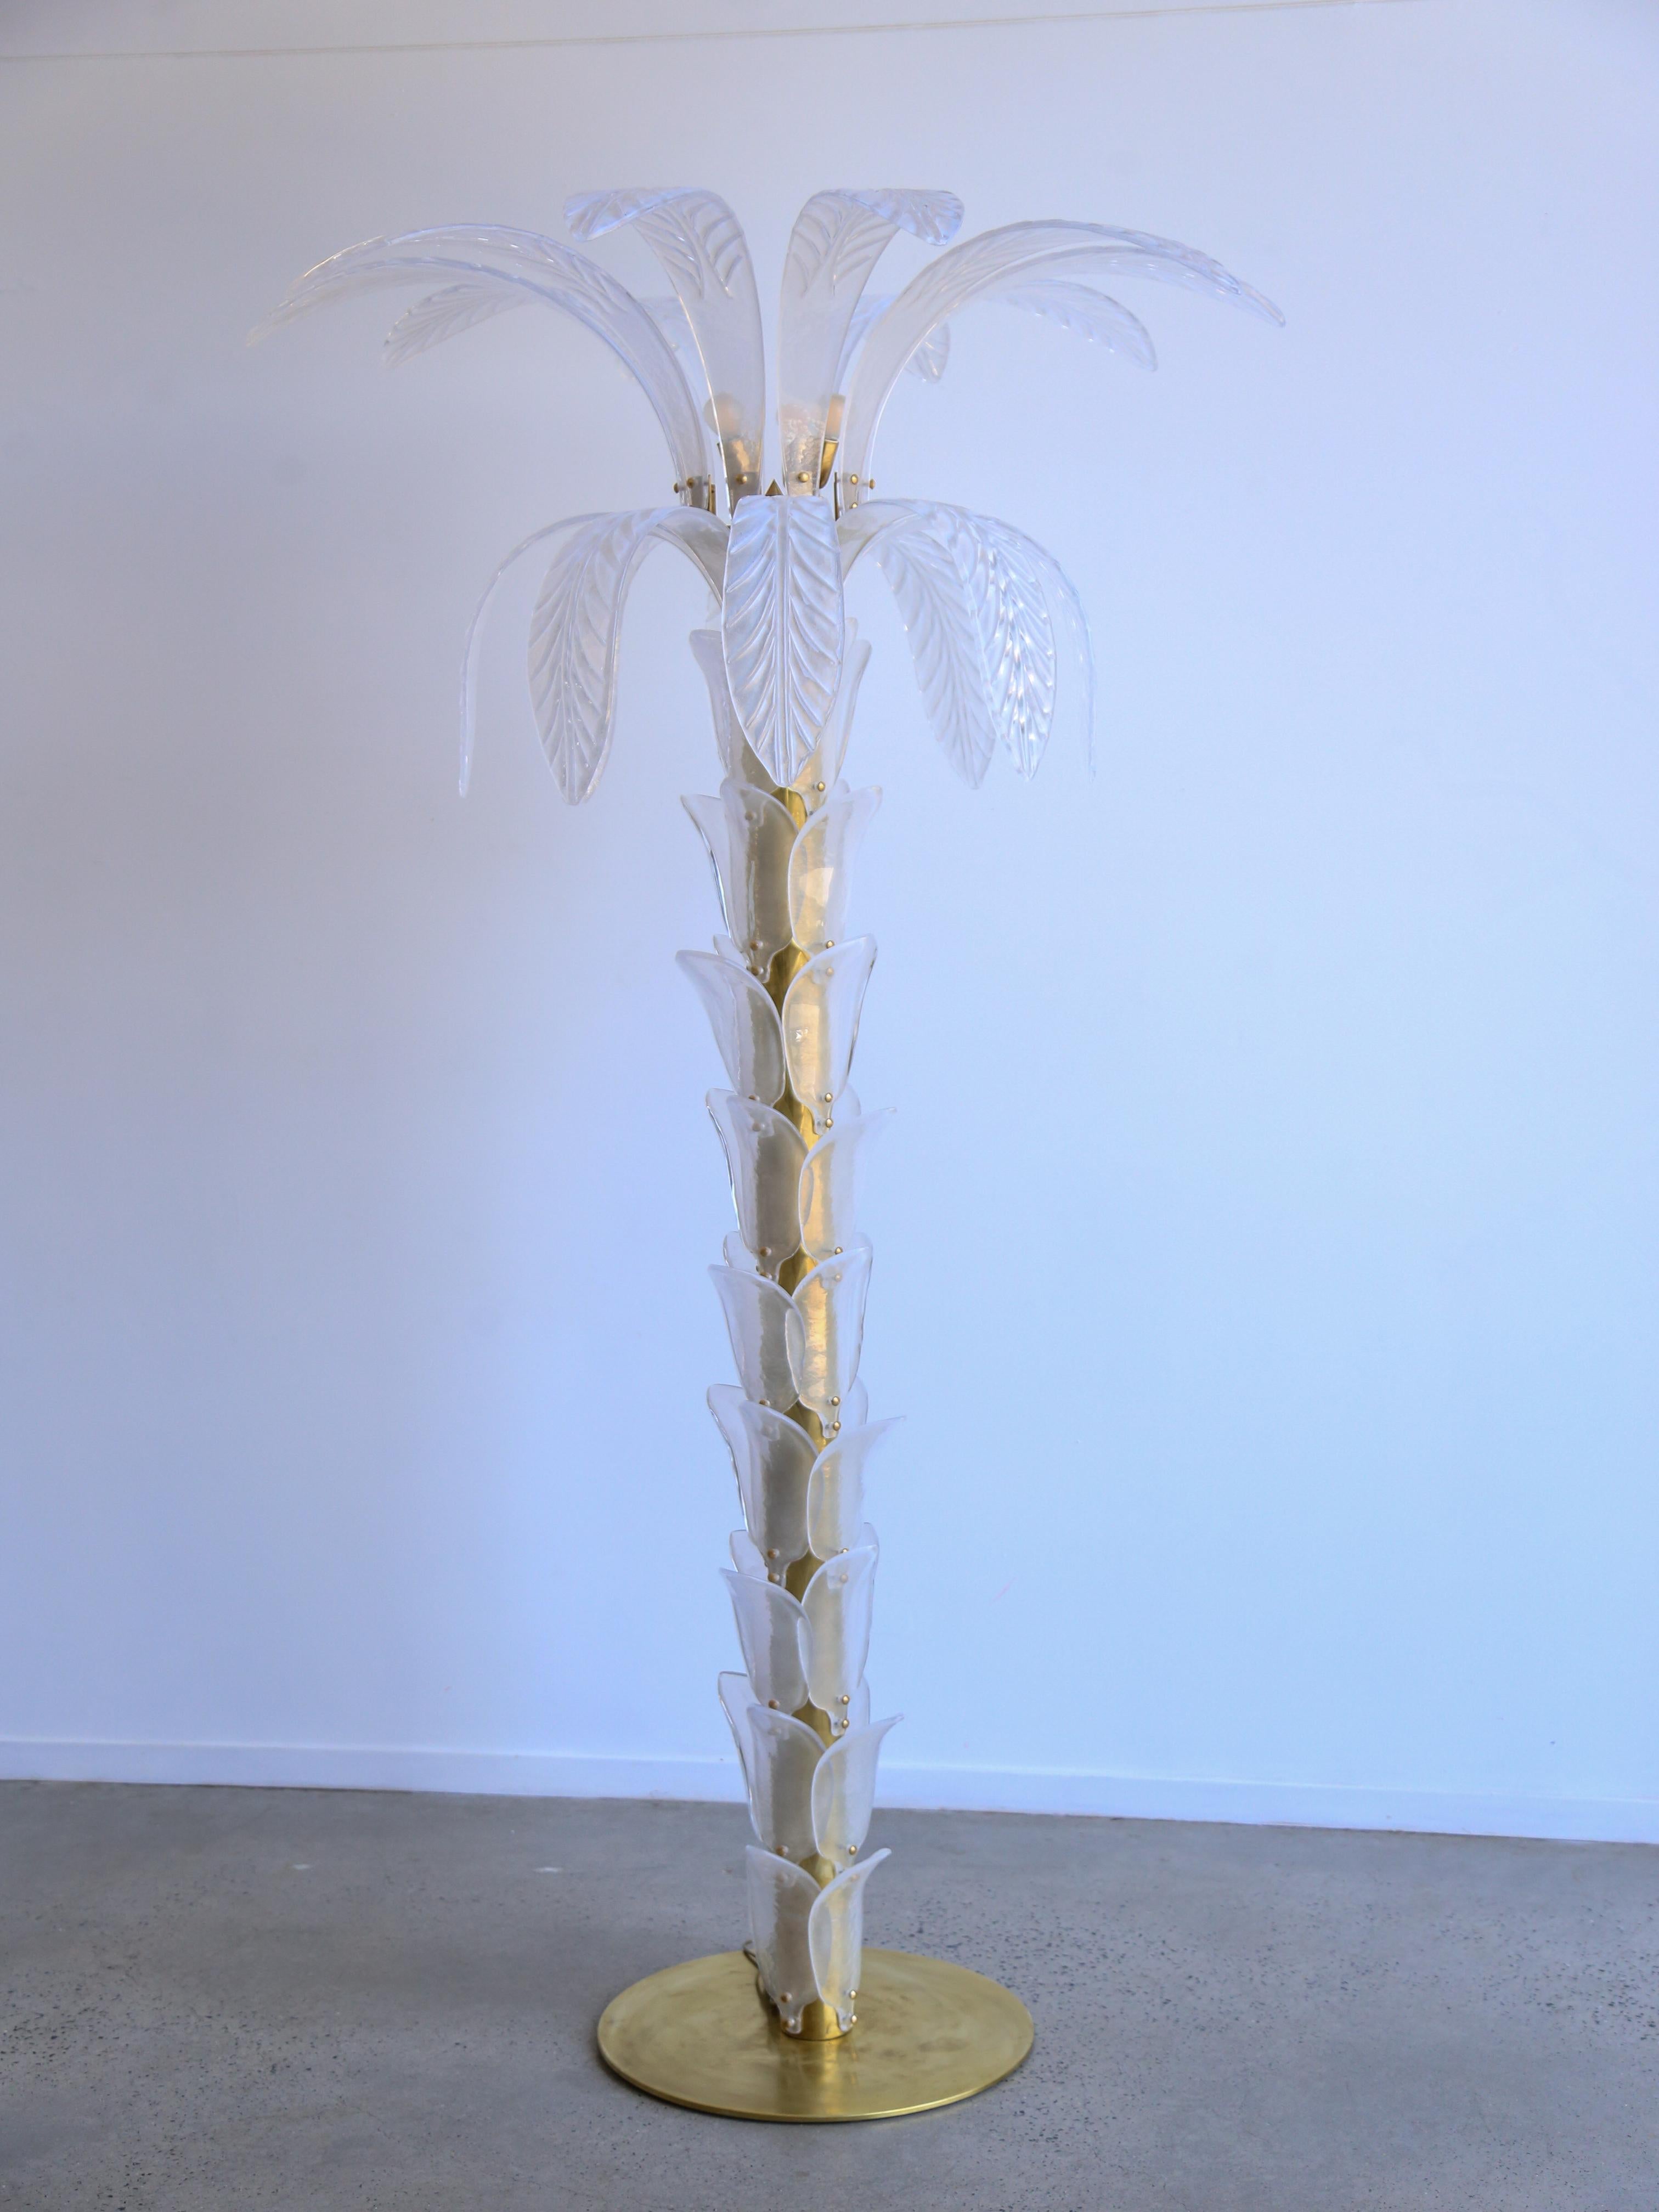 Grand lampadaire blanc-transparent en forme de palmier, composé d'une base circulaire et d'un tronc en laiton, recouvert de feuilles en verre Murano irisé jusqu'au sommet où de grandes feuilles jaillissent du tronc, quatre lumières à l'intérieur de